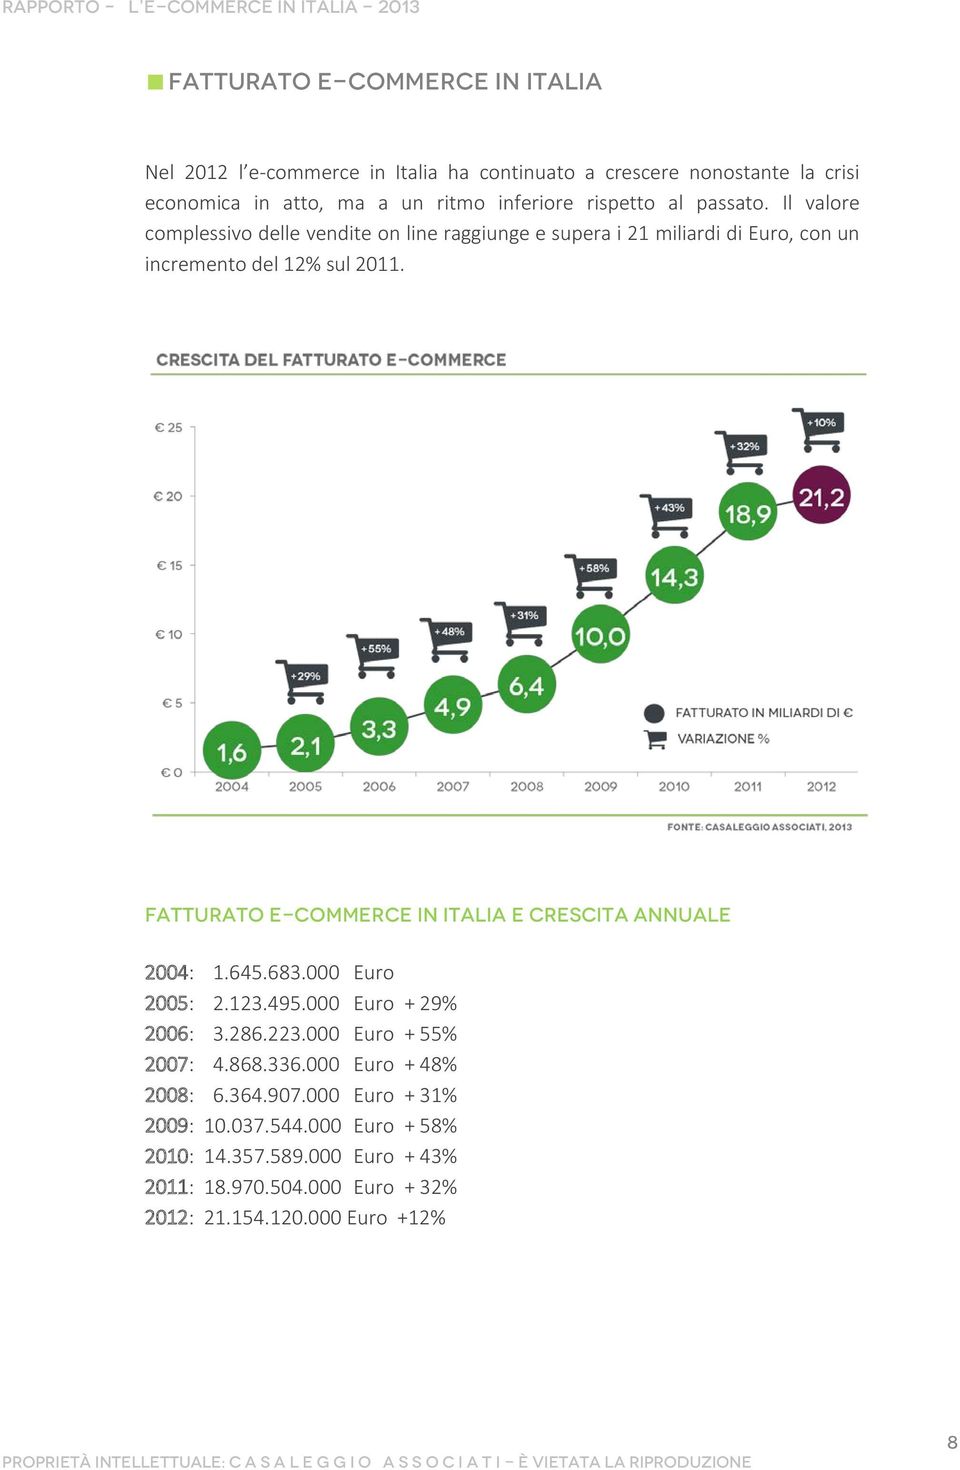 Fatturato e-commerce in Italia e crescita annuale 2004: 1.645.683.000 Euro 2005: 2.123.495.000 Euro + 29% 2006: 3.286.223.000 Euro + 55% 2007: 4.868.336.